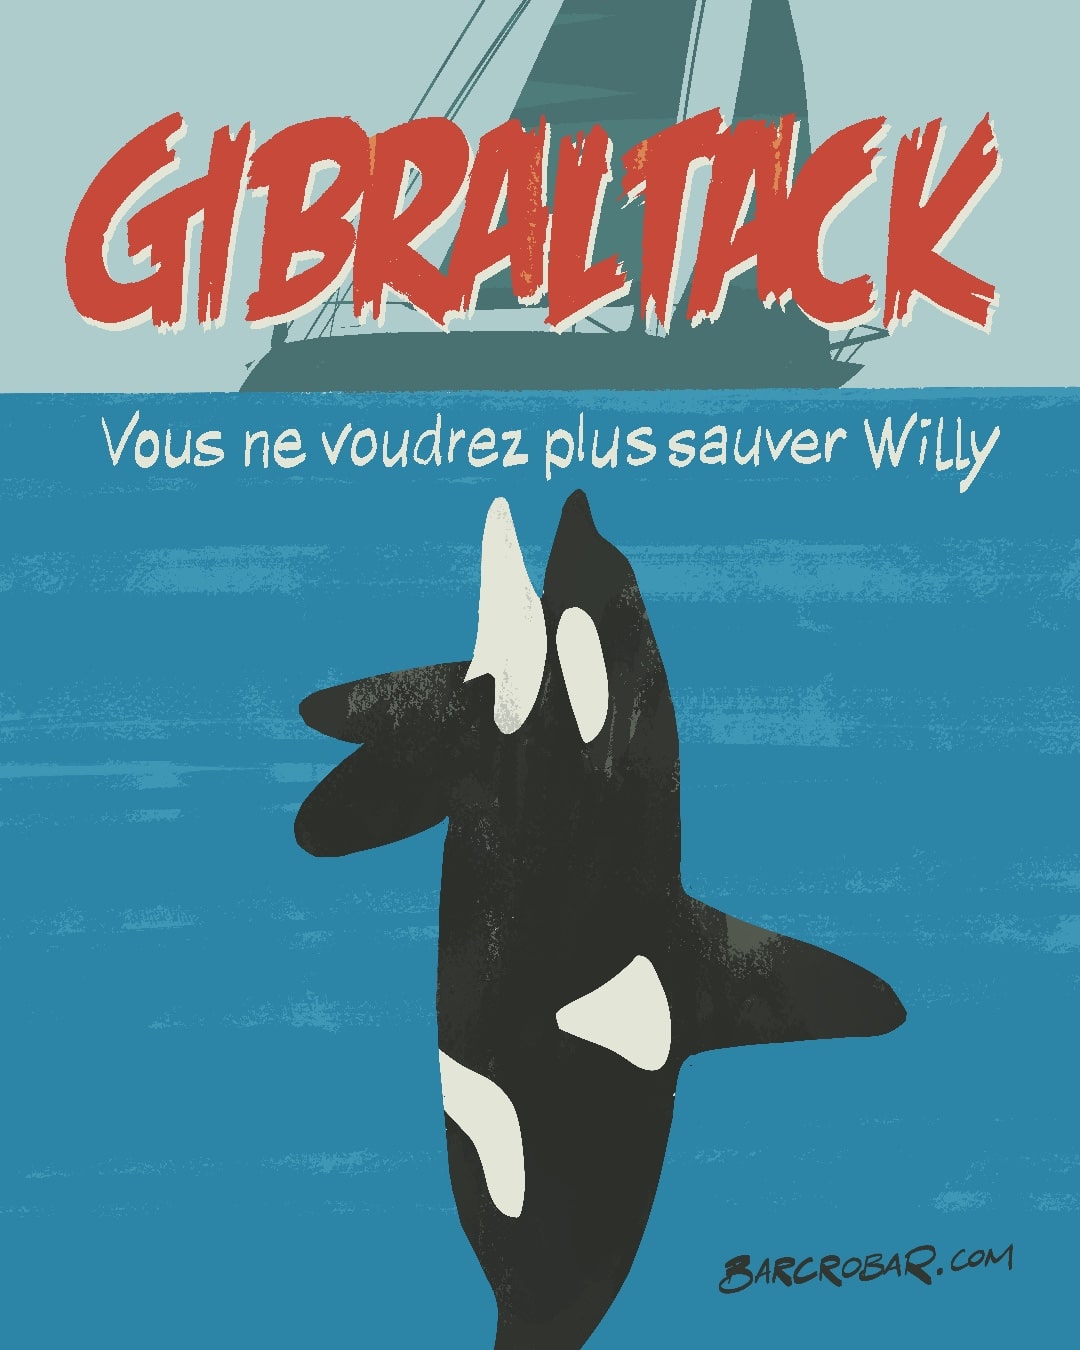 Multiplication des attaques d'orques contre les voiliers dans le détroit de Gibraltar